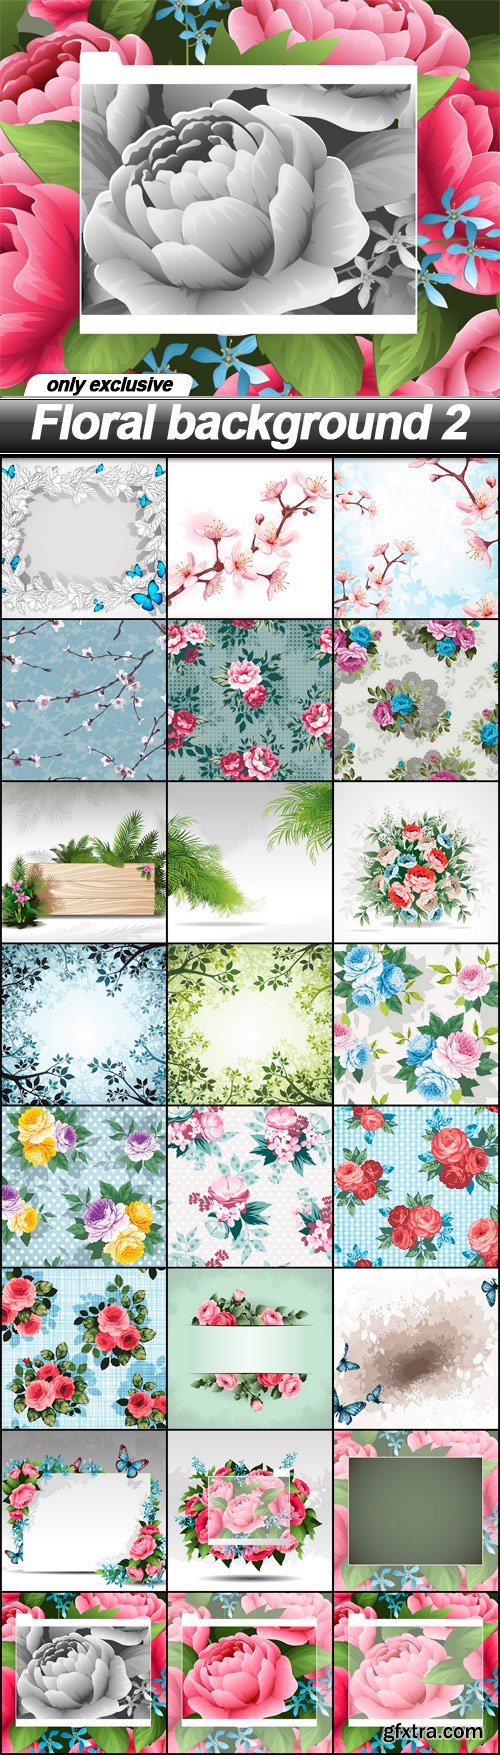 Floral background 2 - 24 EPS